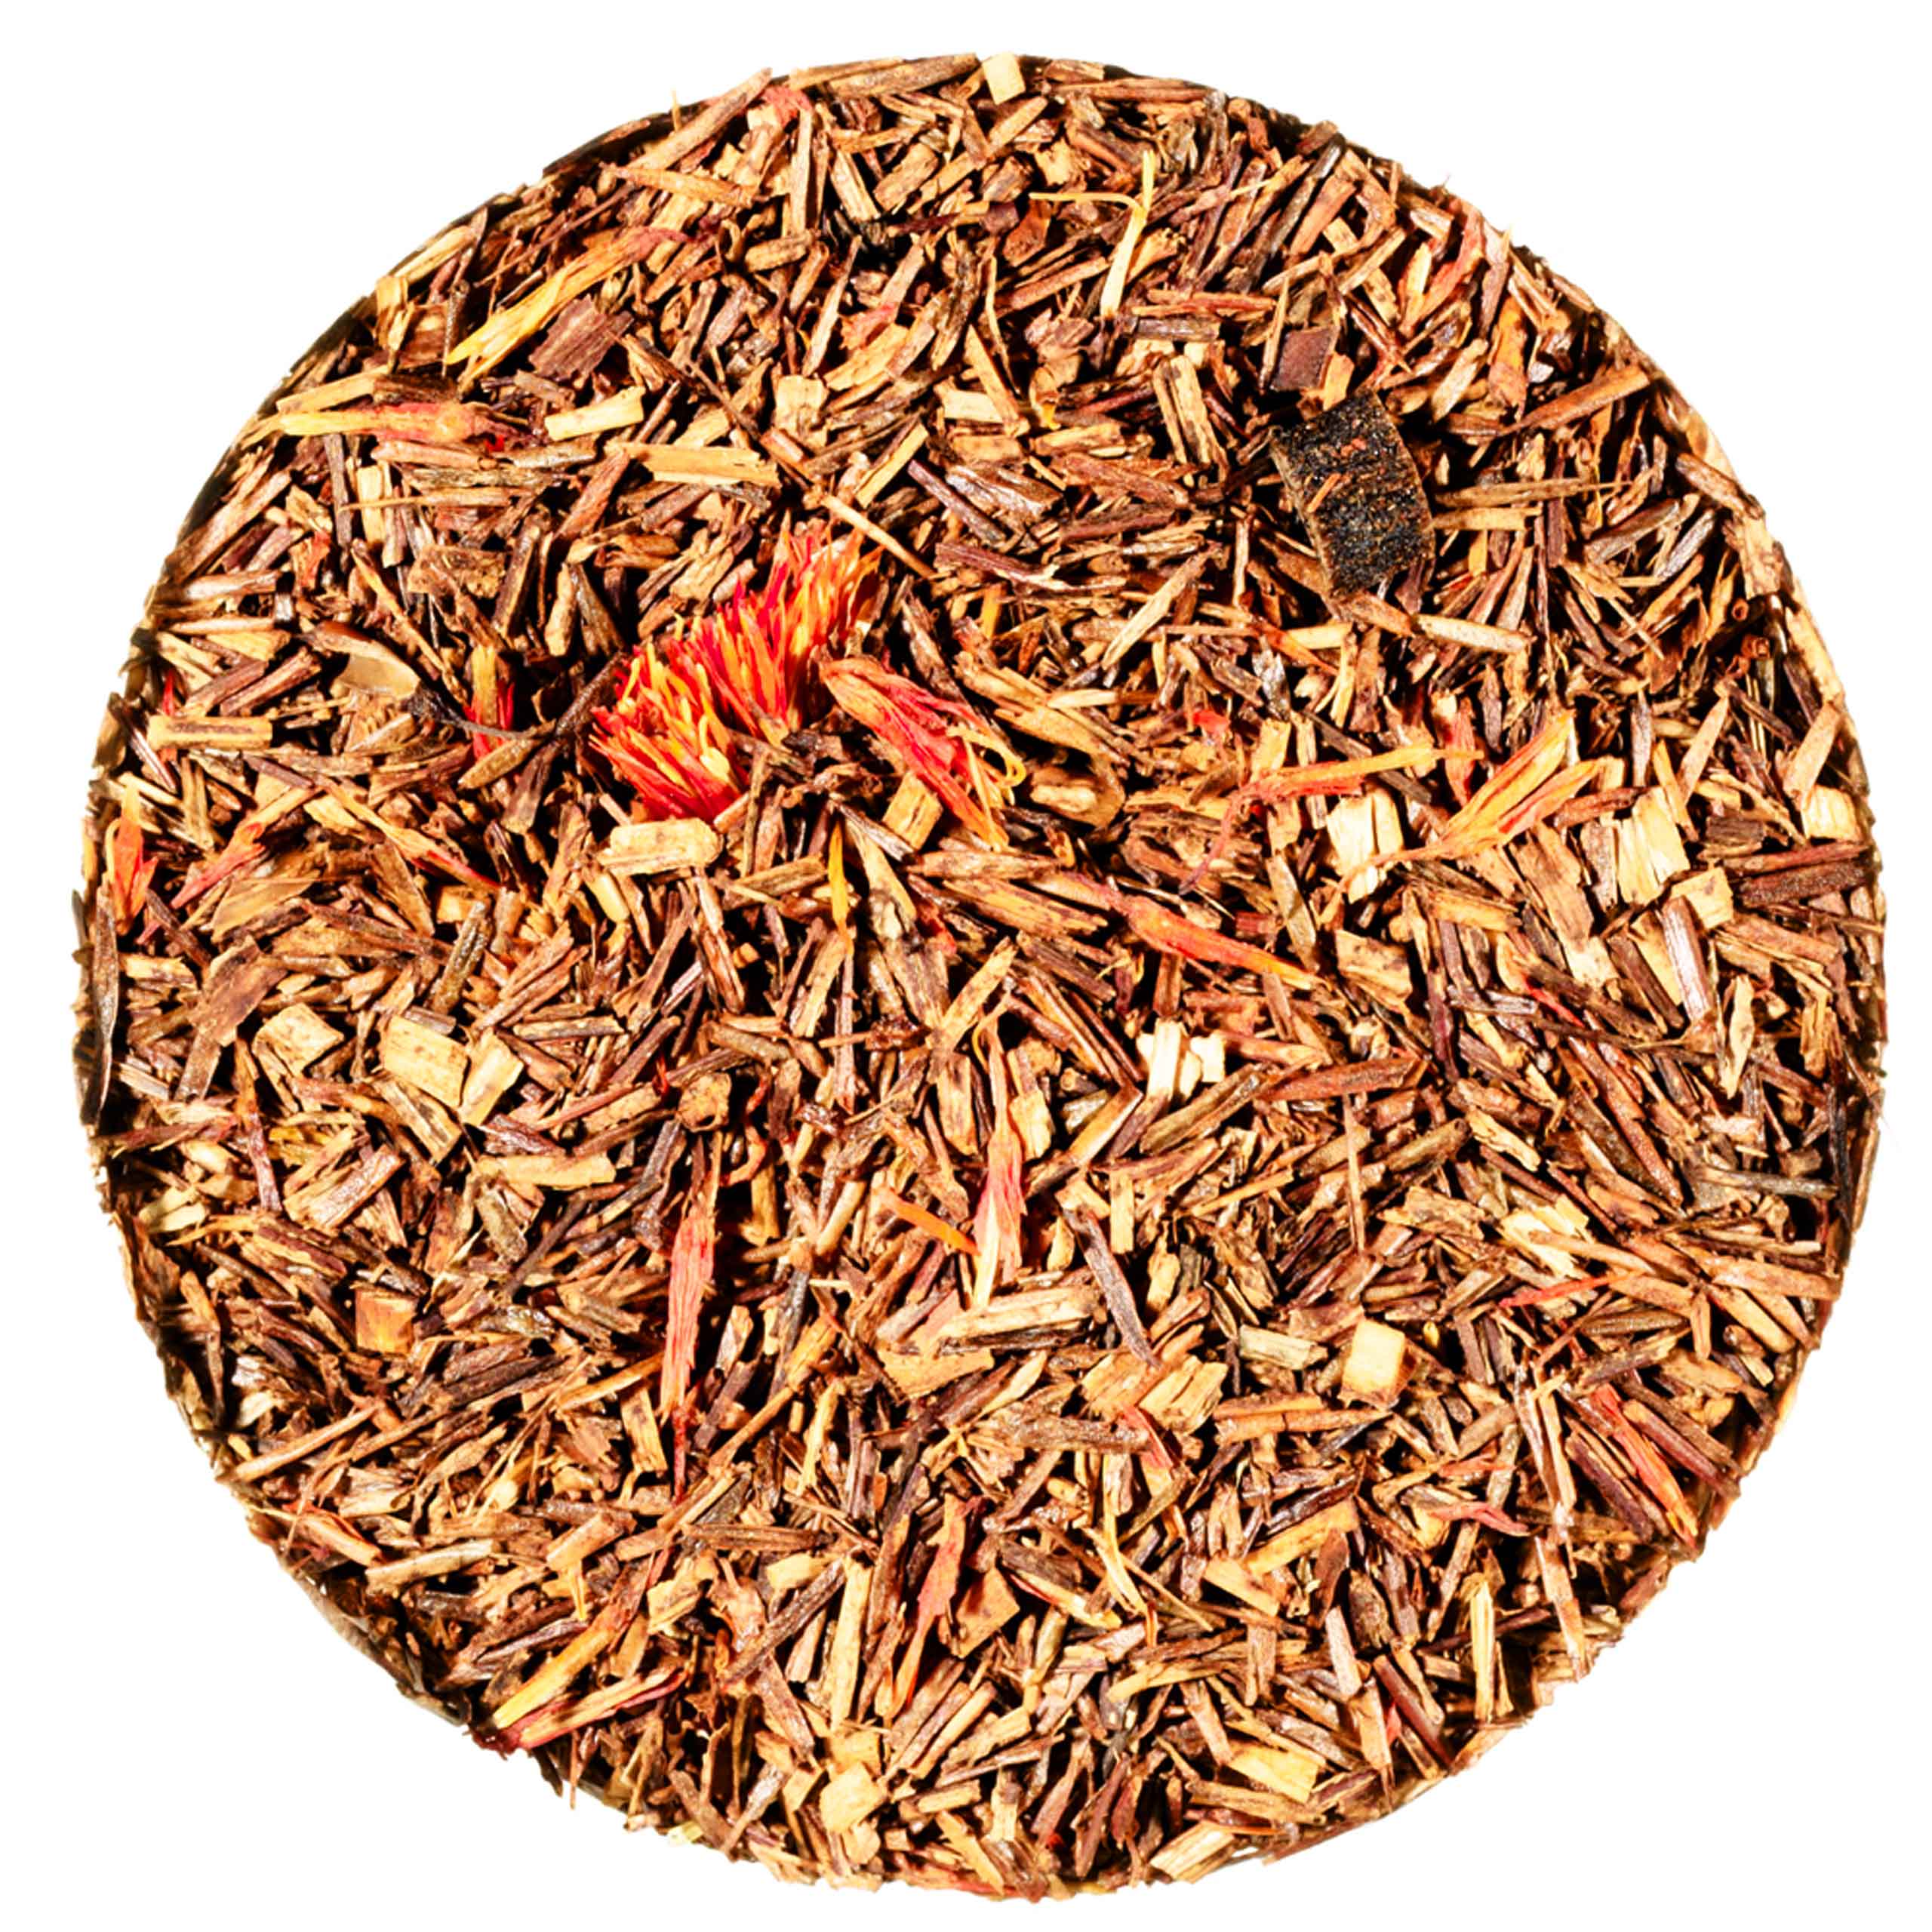 Zusammensetzung der Teesorte Orange Safari